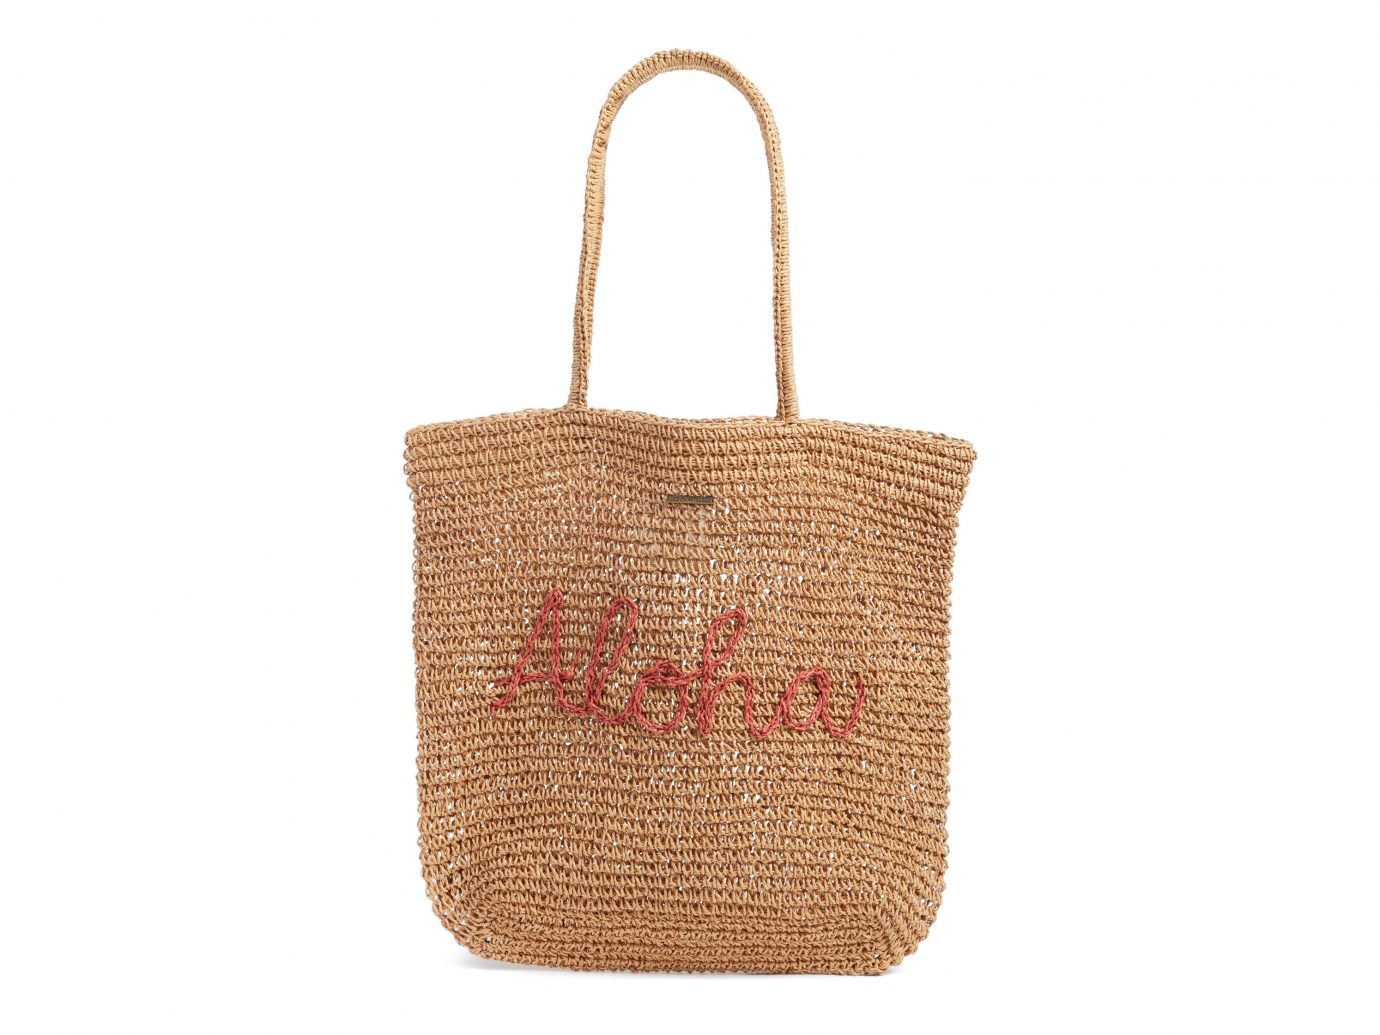 Style + Design Travel Shop handbag bag shoulder bag product accessory basket beige tote bag